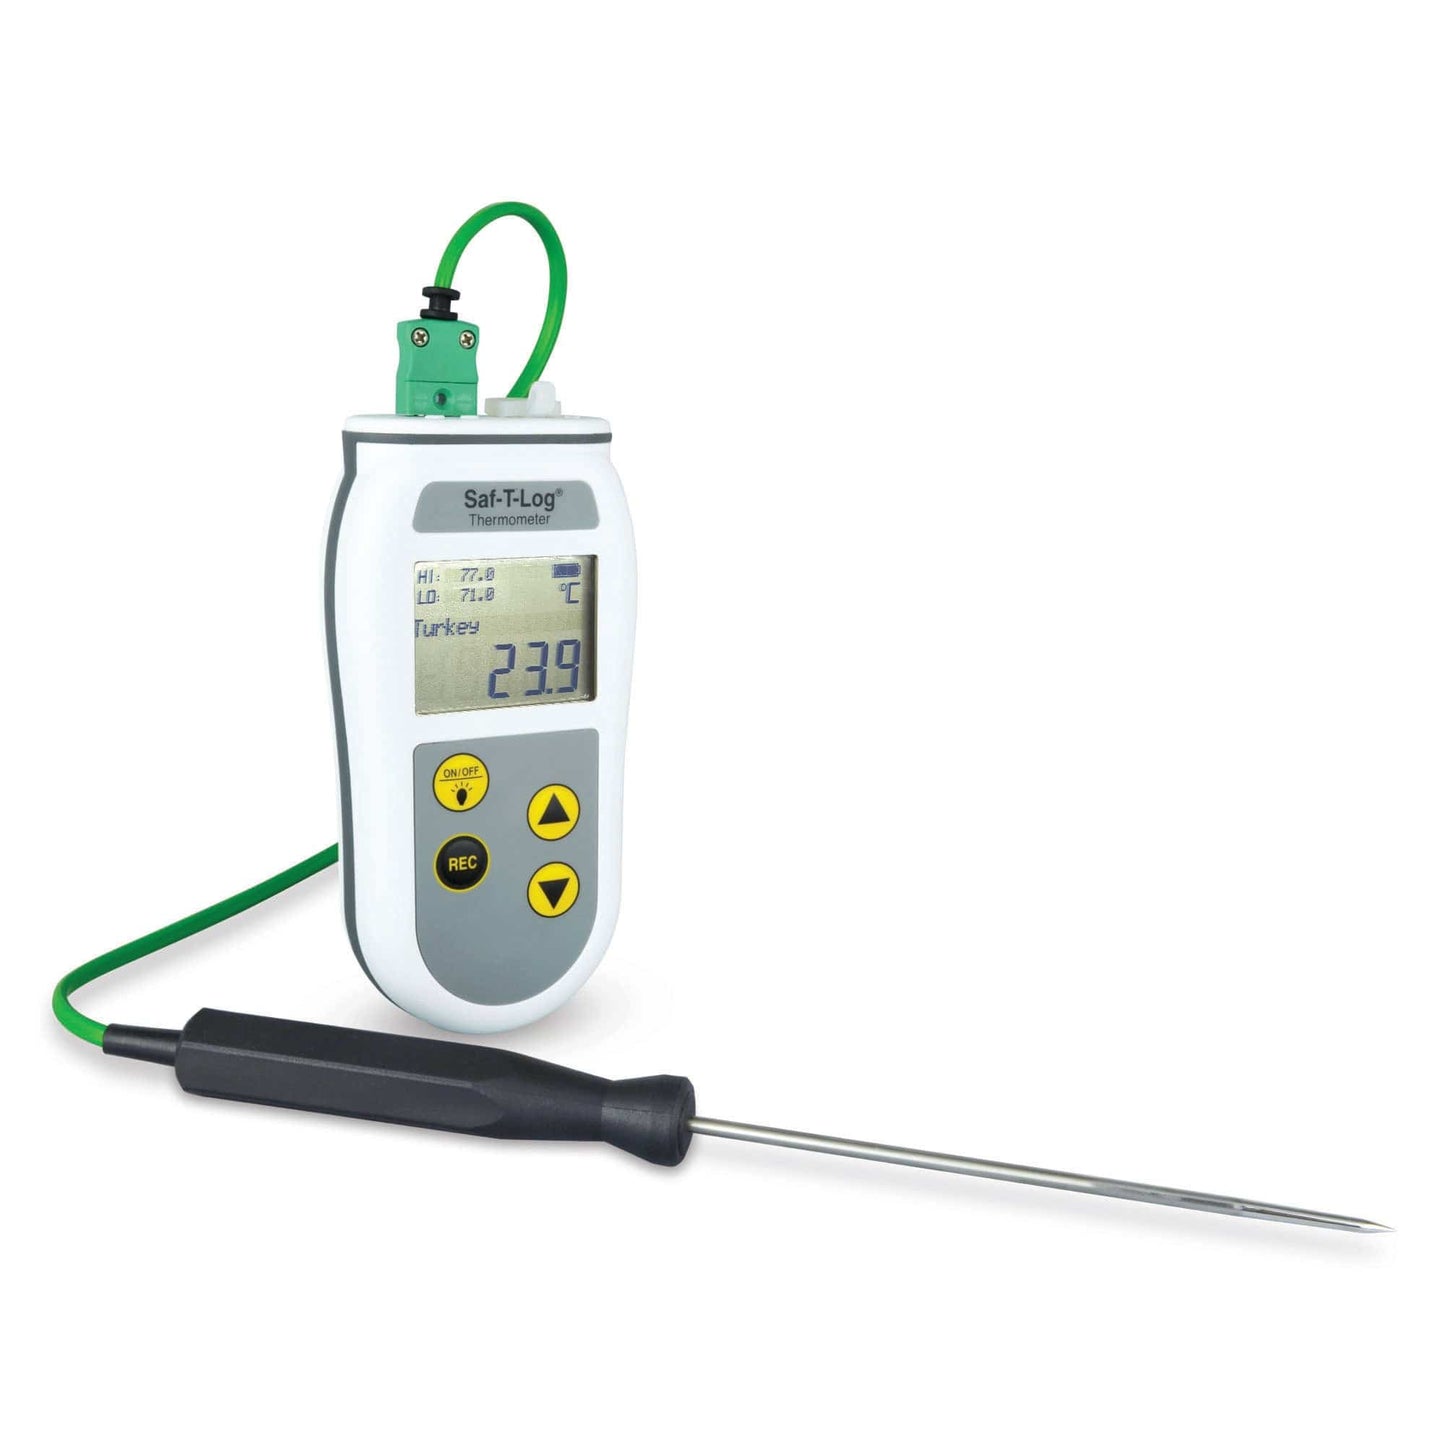 Un thermomètre numérique Saf-T-Log HACCP de Thermometre.fr sur fond blanc.